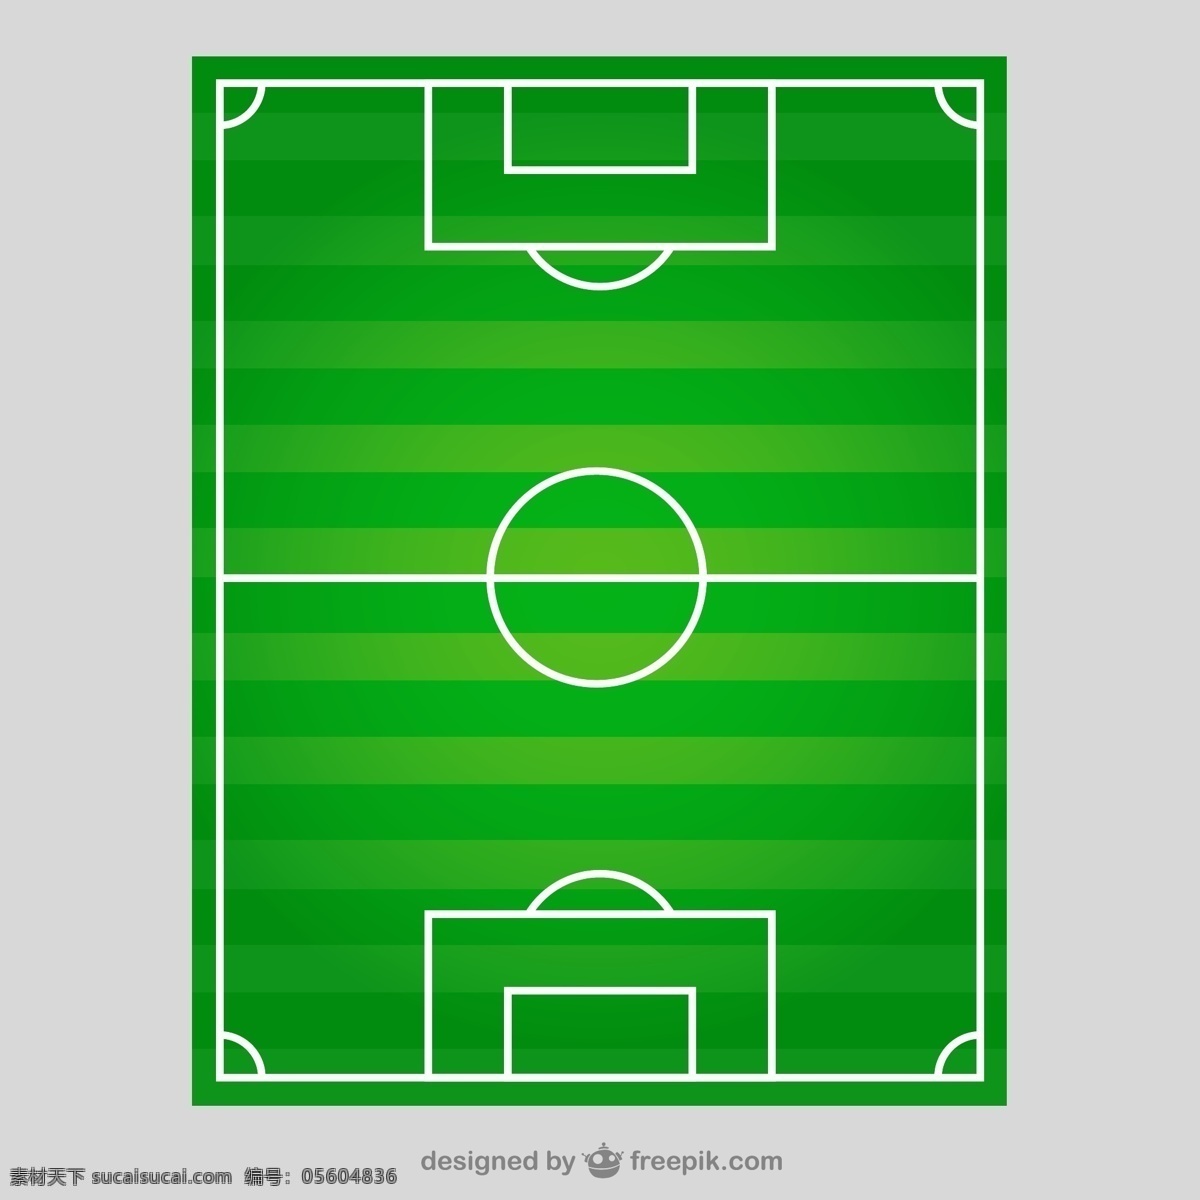 顶视图 中 足球场 足球 体育 绿色 团队 比赛 联赛 沥青 运动 图标 高清 源文件